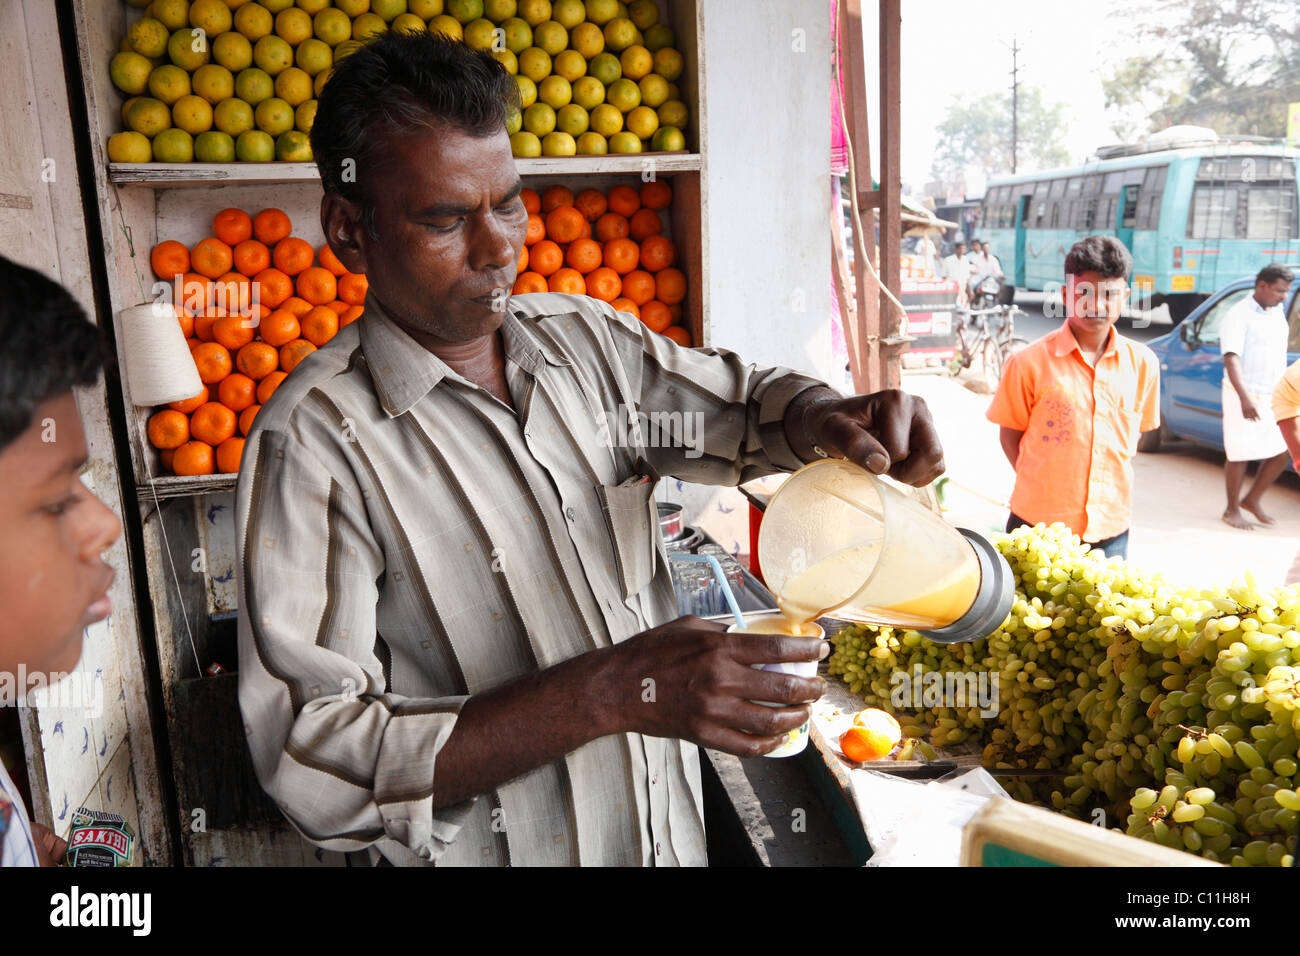 Vendeur de fruits verser du jus d'orange en tasse, Punjaipuliampatti, Tamil Nadu, Tamilnadu, Inde du Sud, Inde, Asie du Sud, Asie Banque D'Images